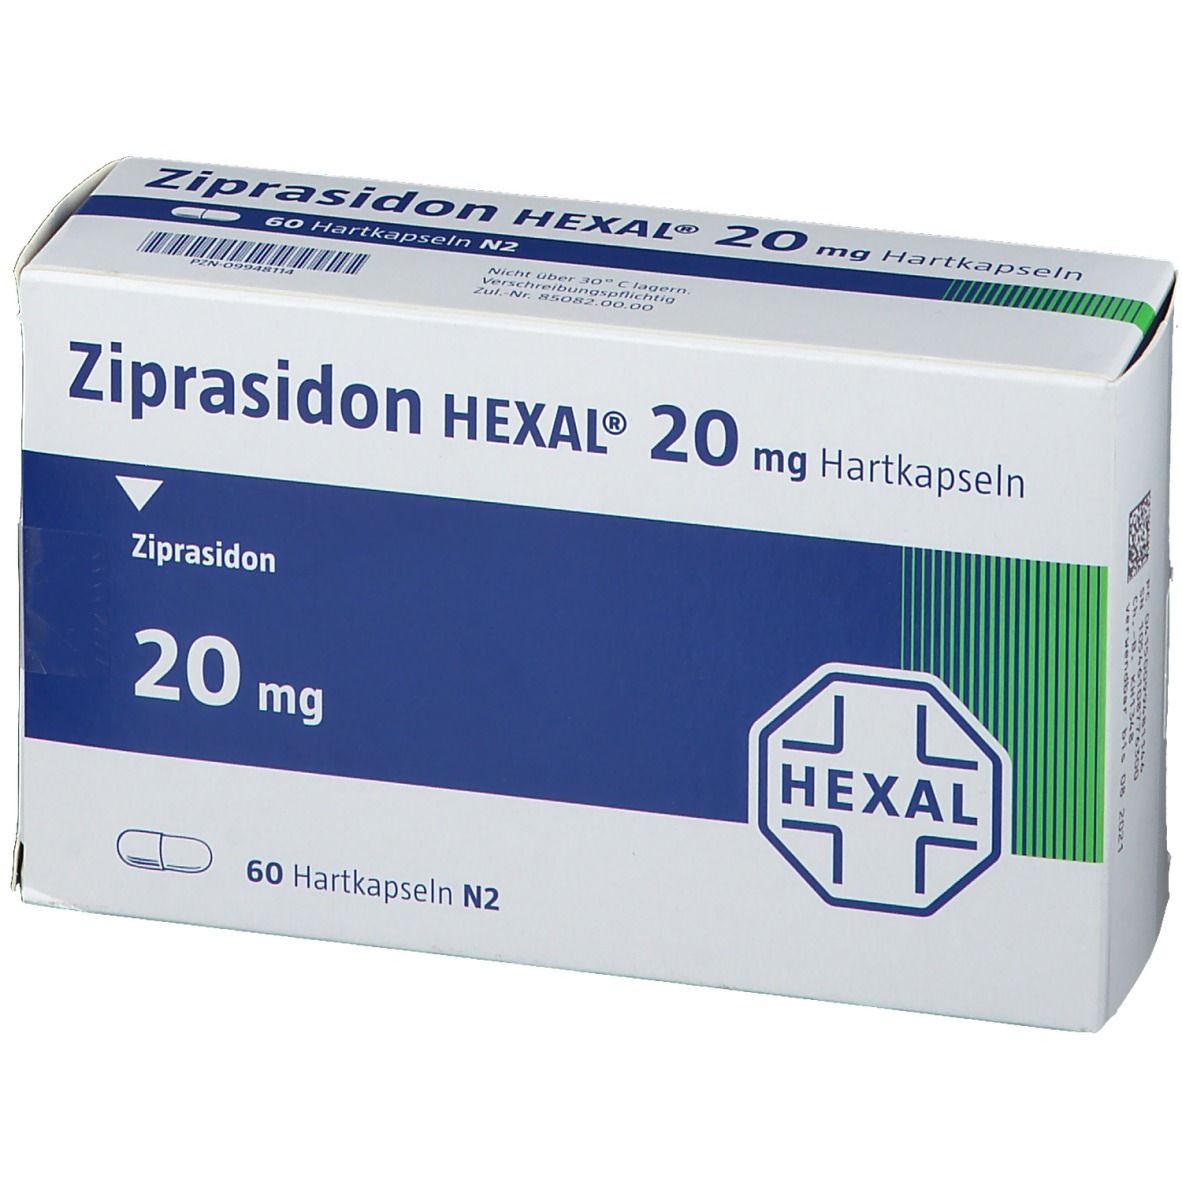 Ziprasidon HEXAL® 20 mg